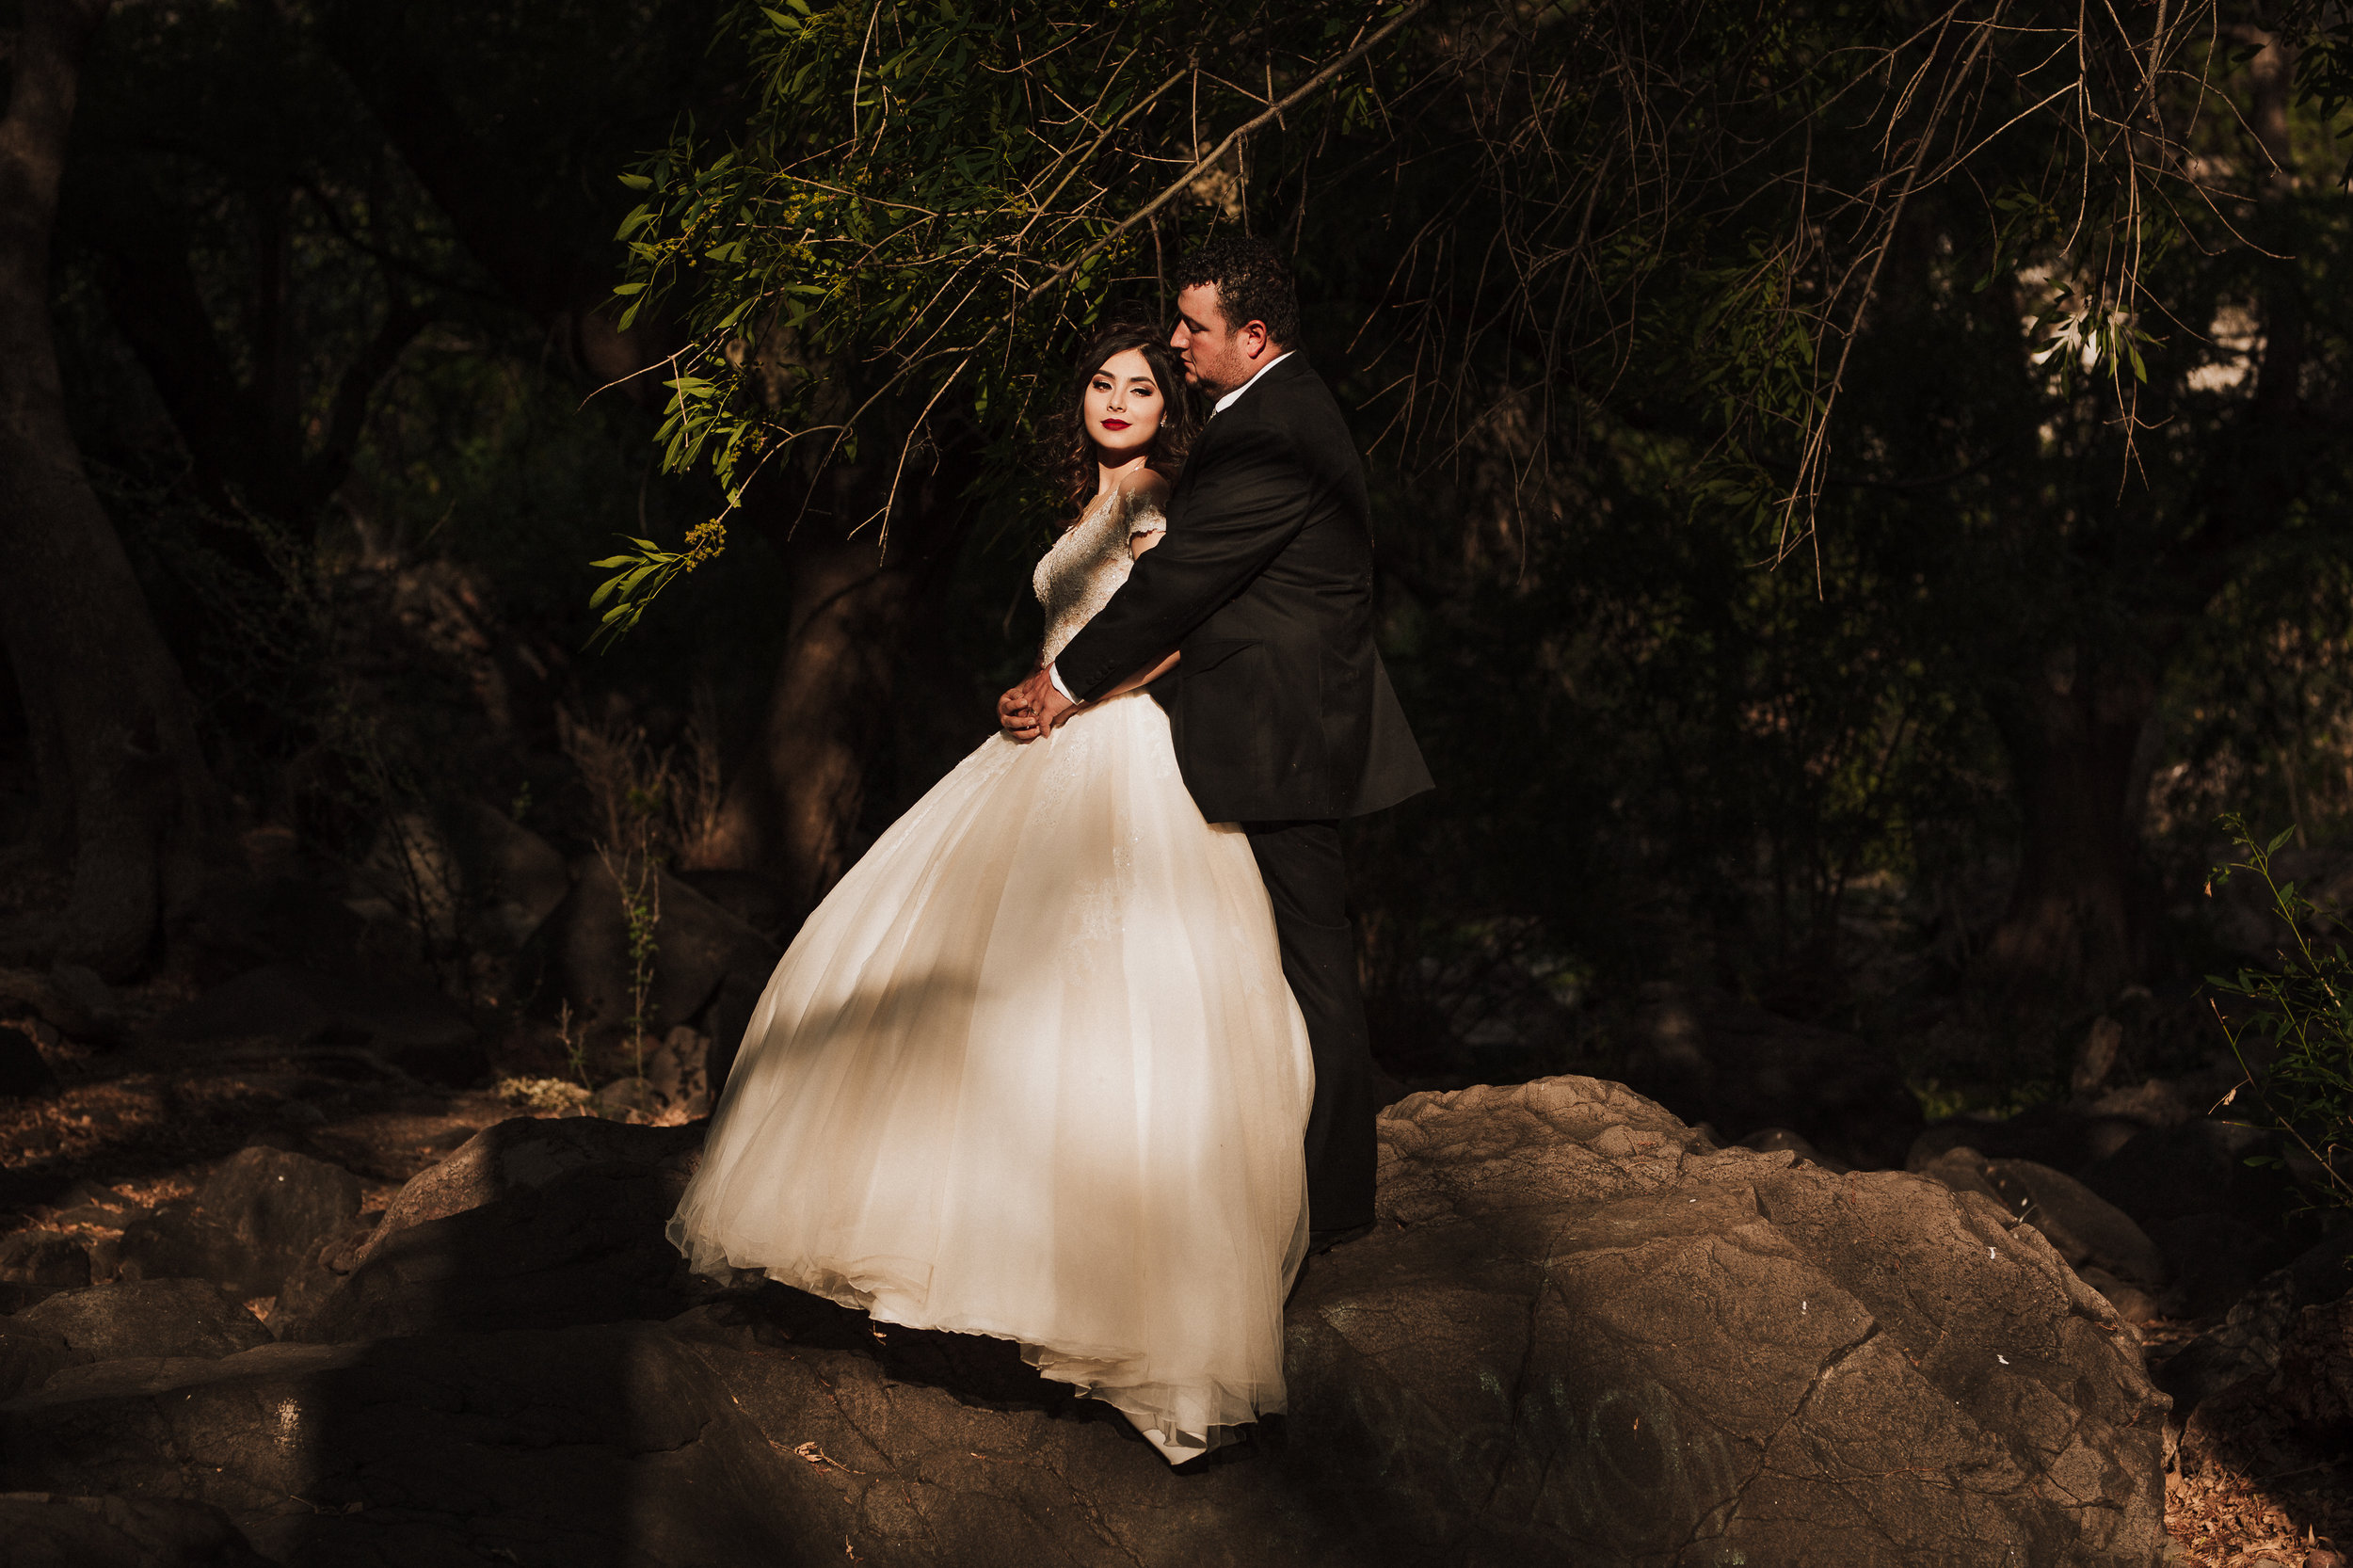 Fotografo-de-bodas-destino-Mexico-wedding-destination-photographer-san-miguel-de-allende-guanajuato-queretaro-boho-bohemian-bohemio-chic-editorial-carotida-photographer-canada-banff-alberta